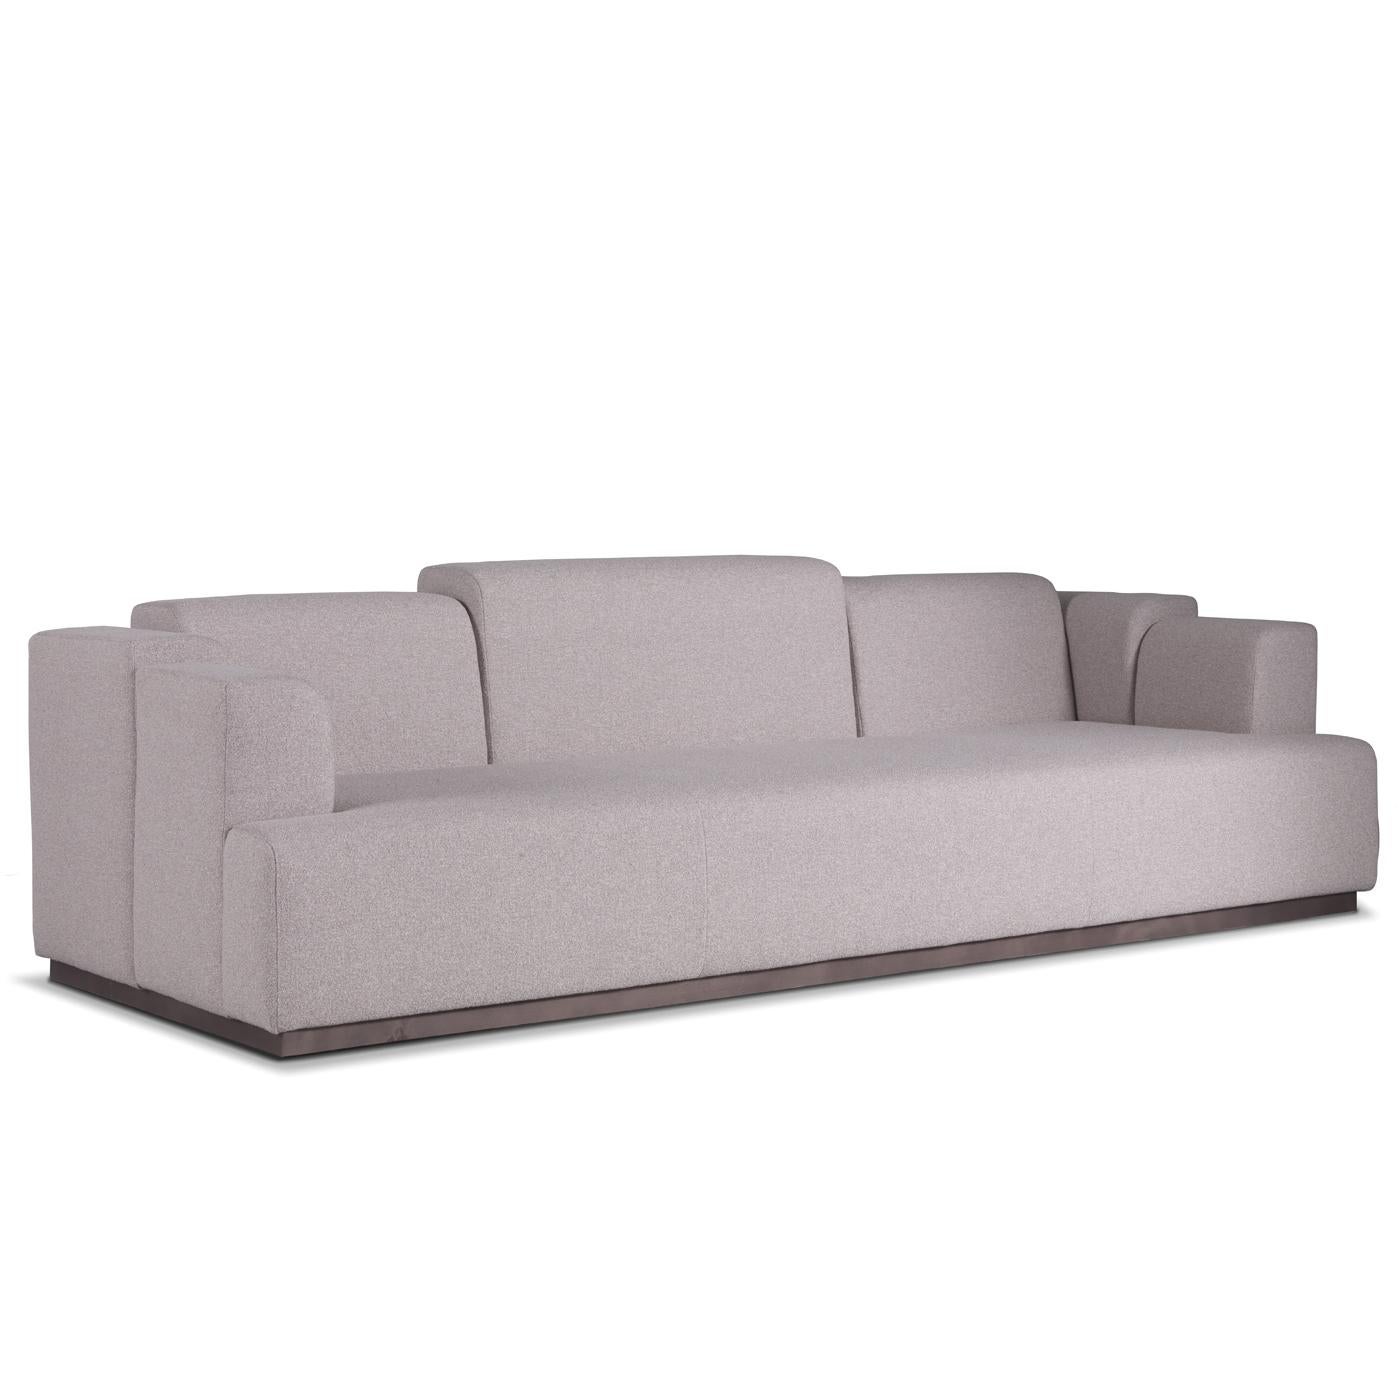 Inspiriert vom Stil der 1980er Jahre, ist dieses auffällige Sofa ein einzigartiges Stück, das in jedem Wohnzimmer für Aufsehen sorgen wird. Die elegante graue Farbe wird durch einen einzigartigen Rücken mit unterschiedlich großen Abschnitten